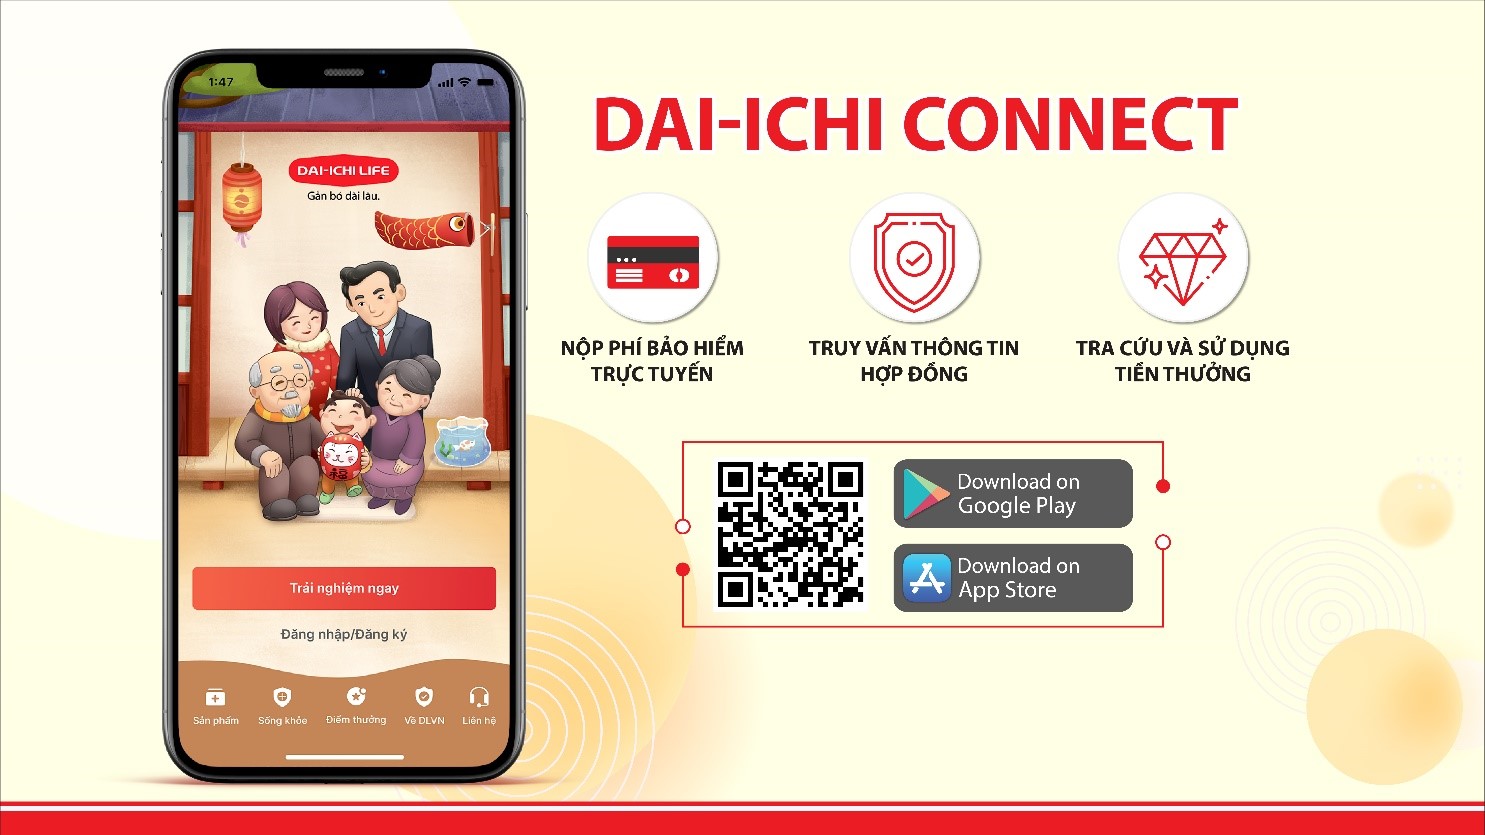 Ứng dụng trên thiết bị di động Dai-ichi Connect